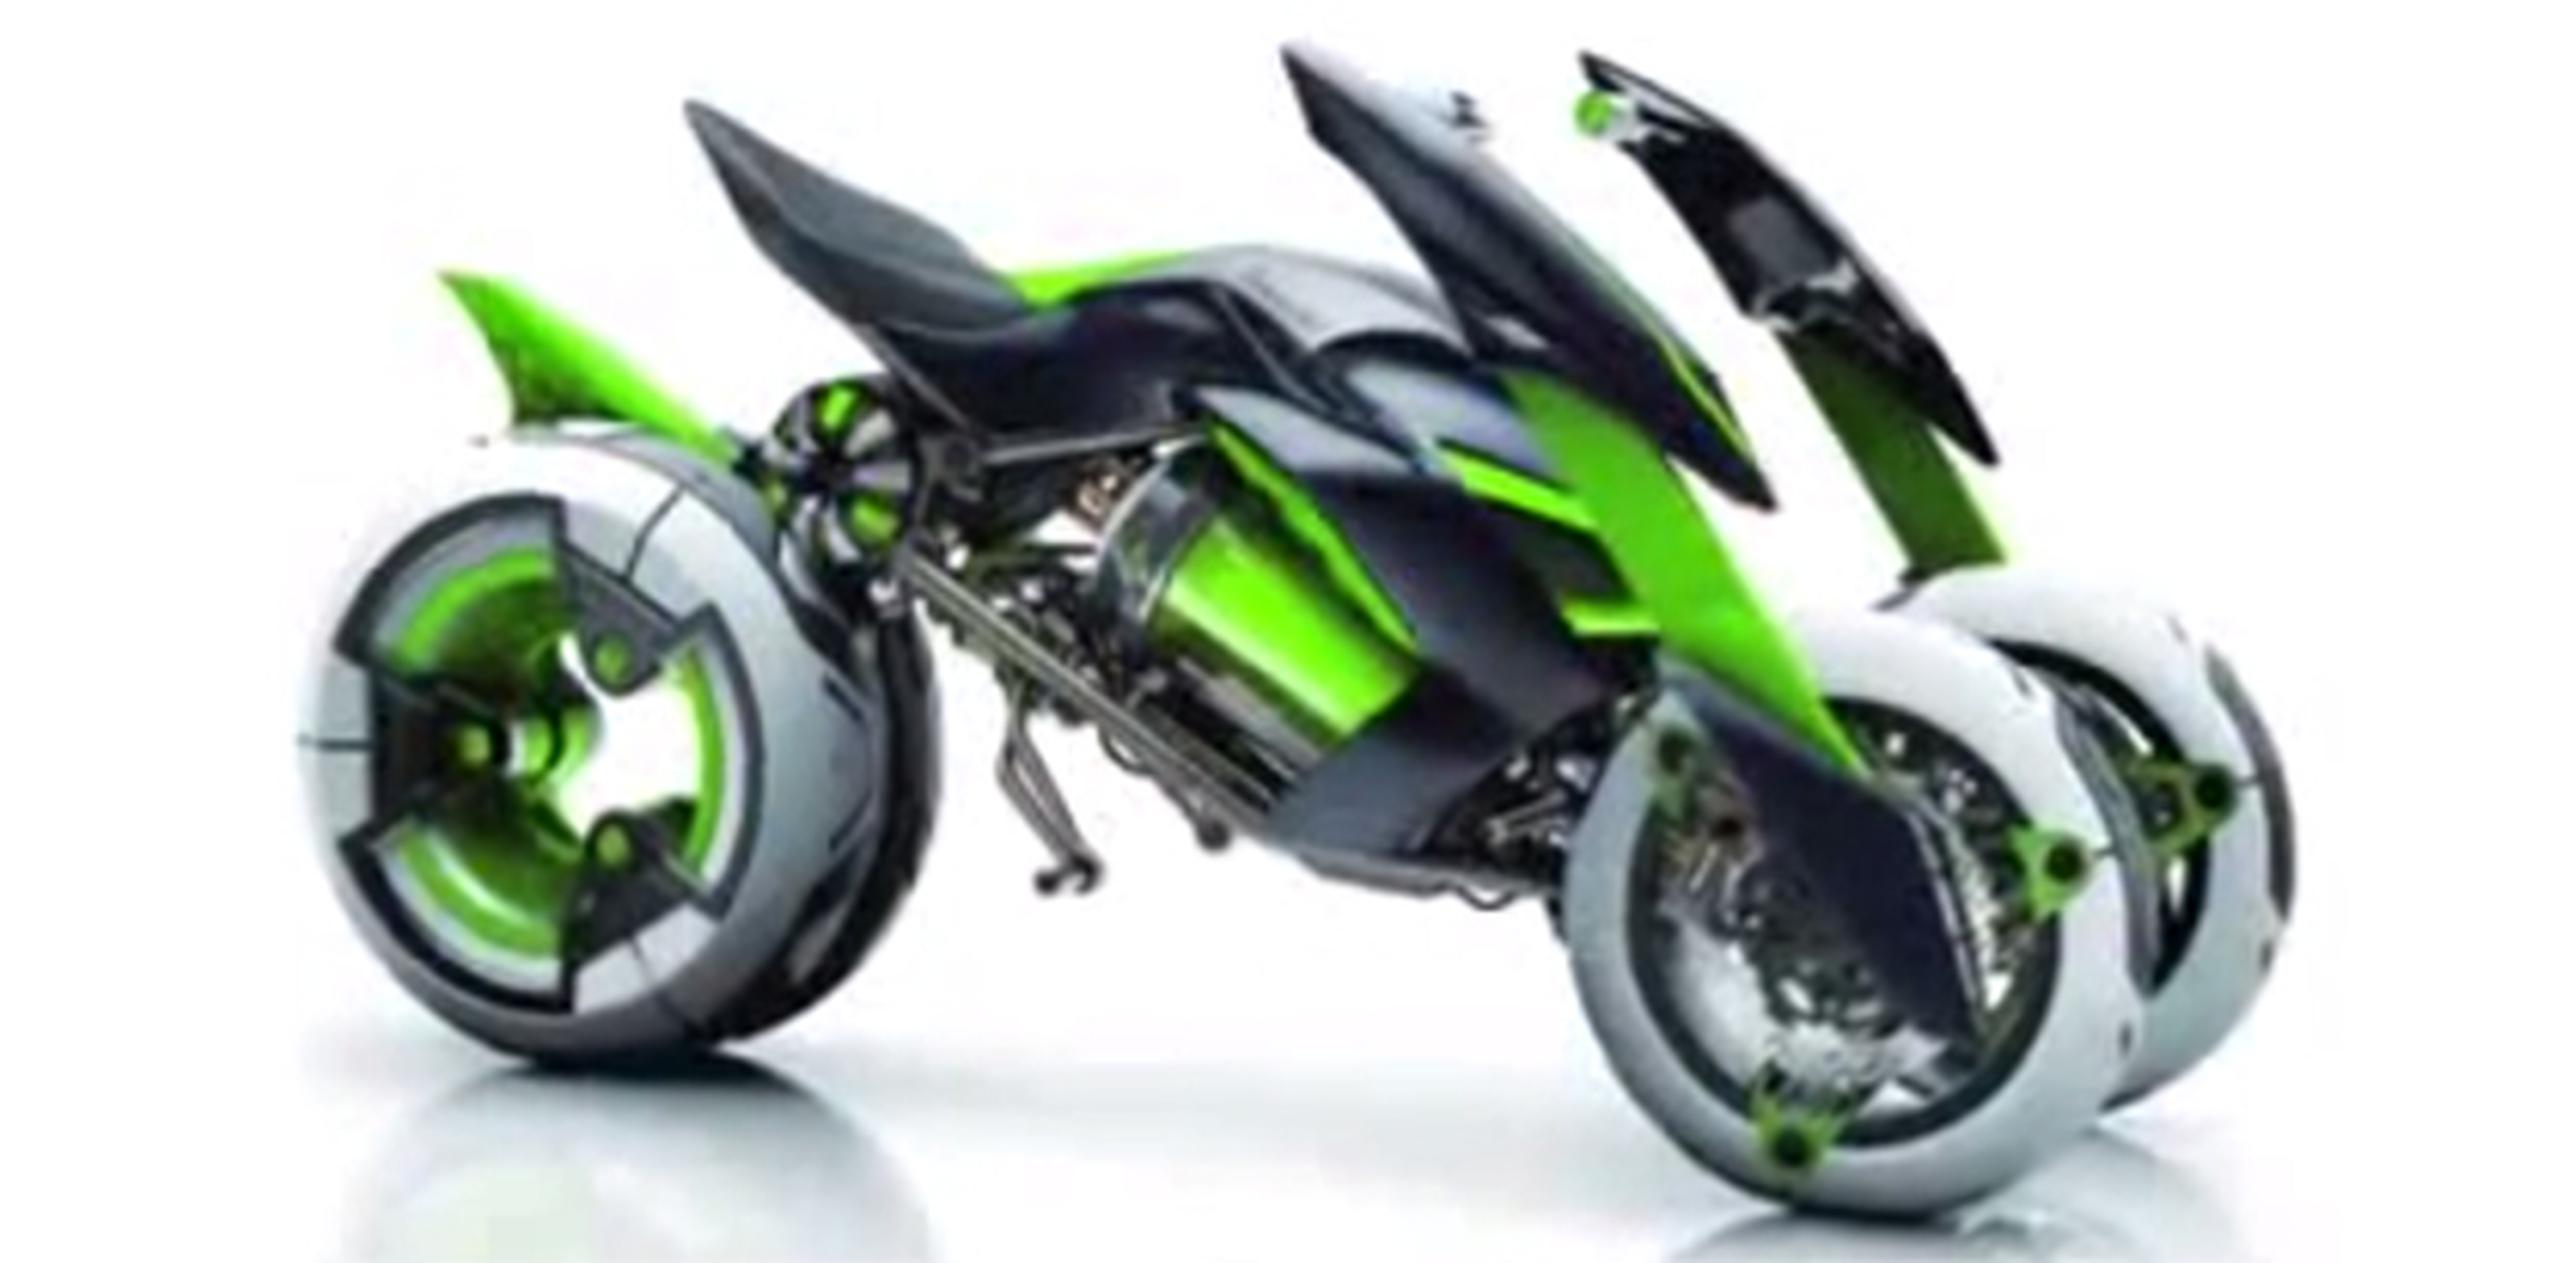 Kawasaki “J”, prototipo eléctrico. (YouTube)